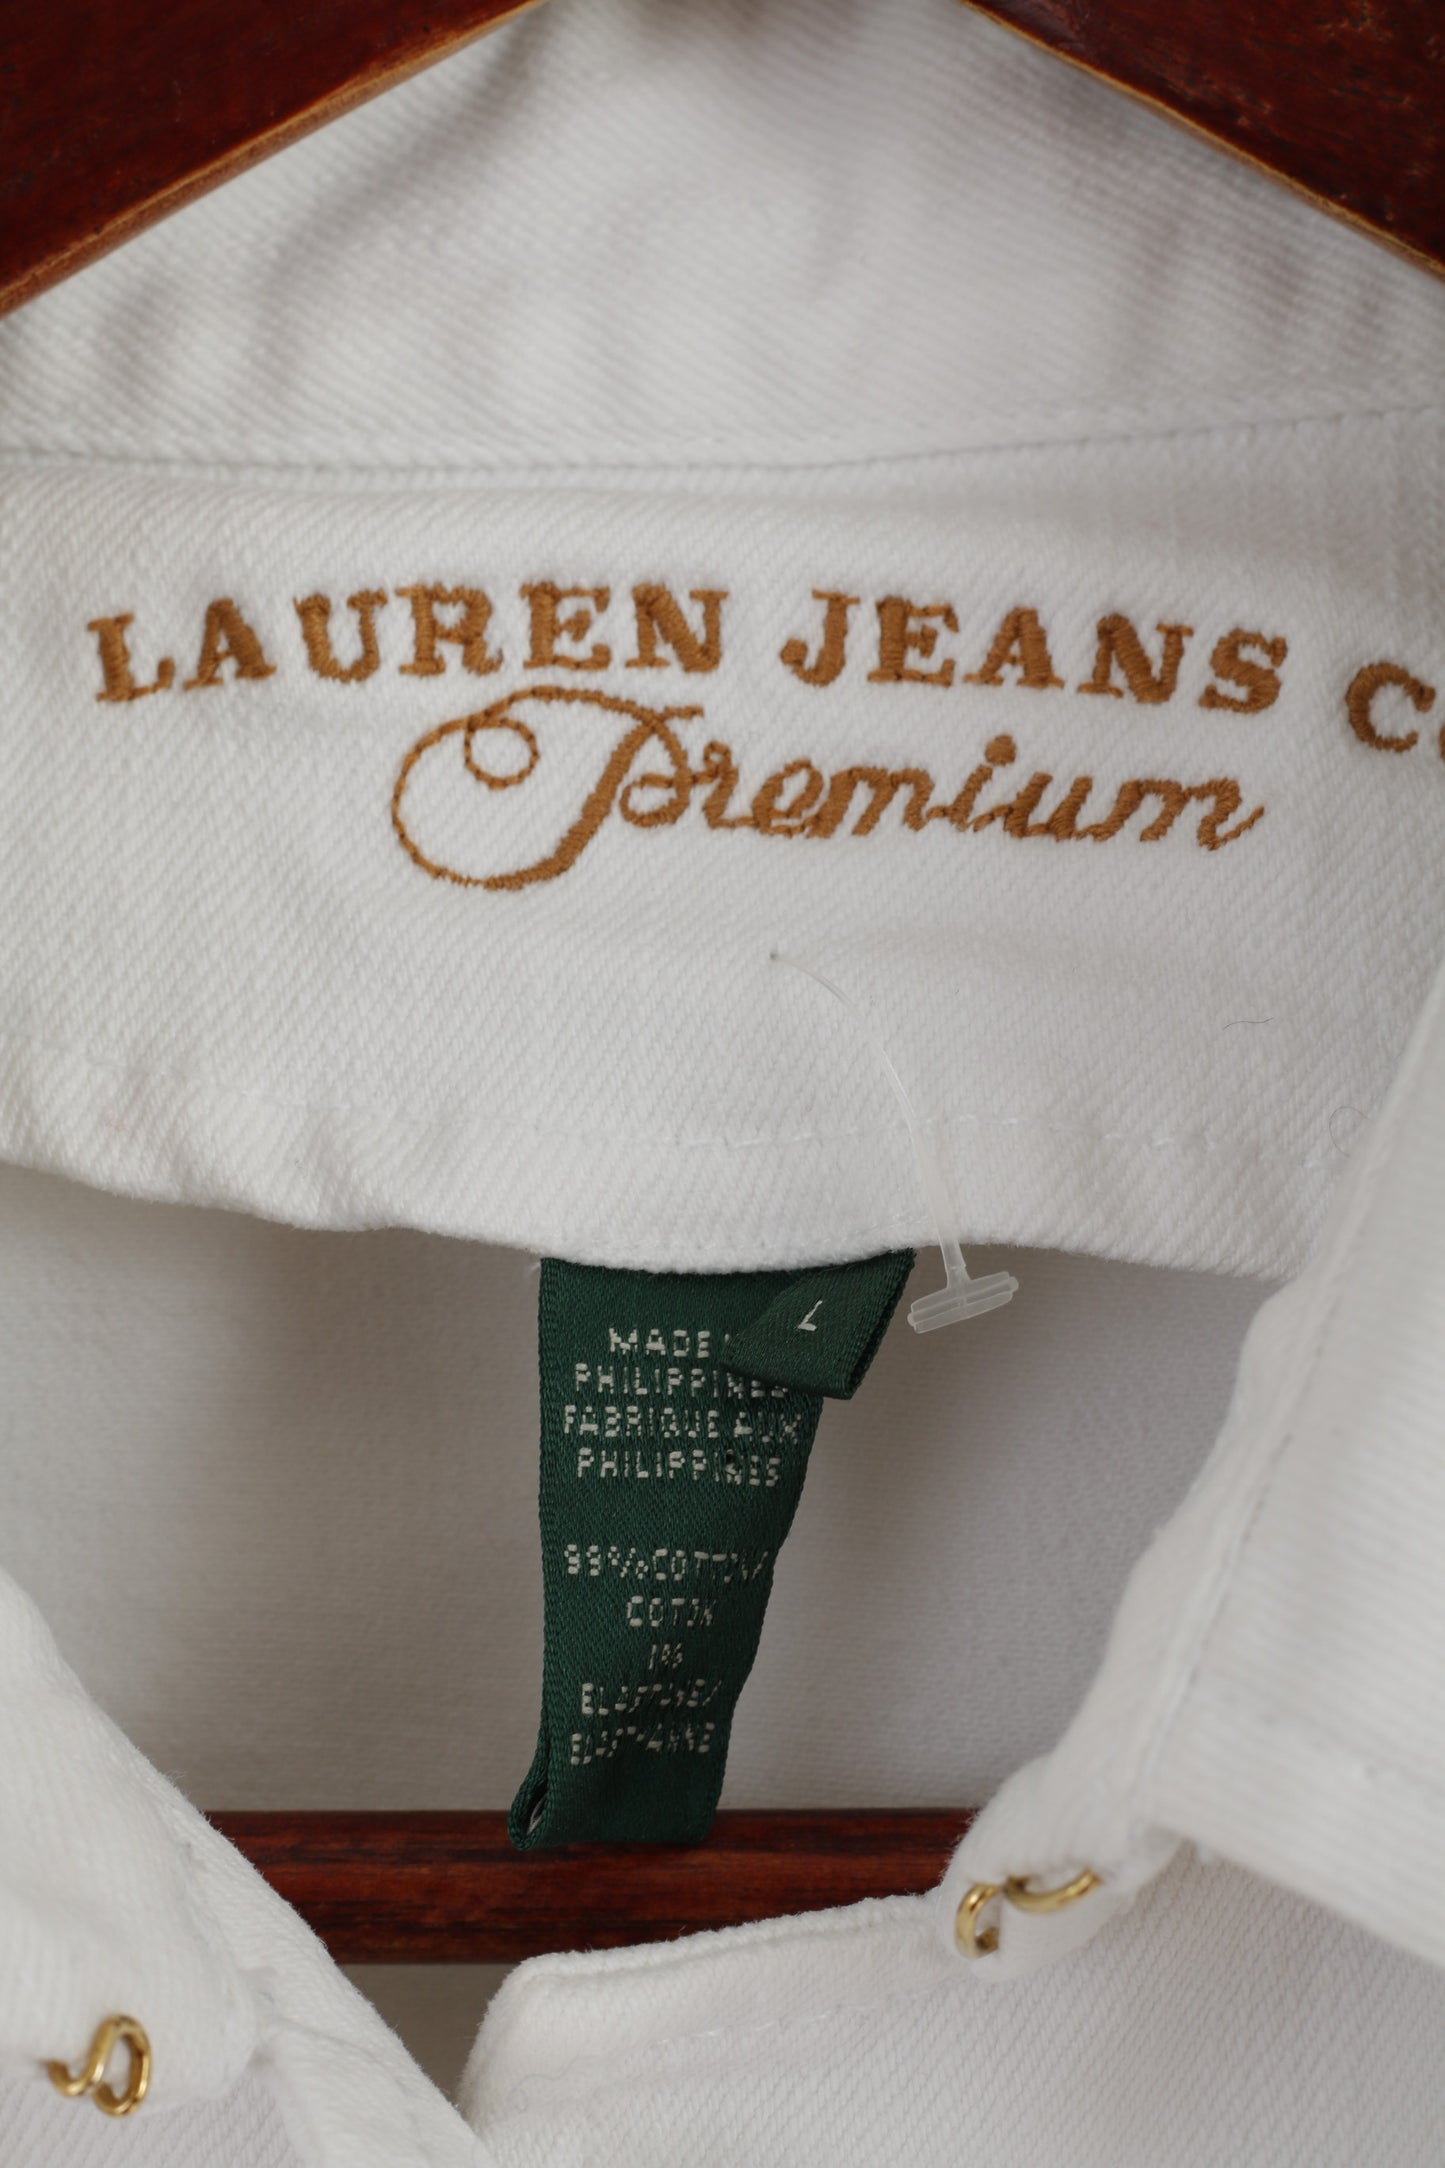 Ralph Lauren Jeans Co. Premium Femmes L Veste Blazer court en coton blanc Keystone